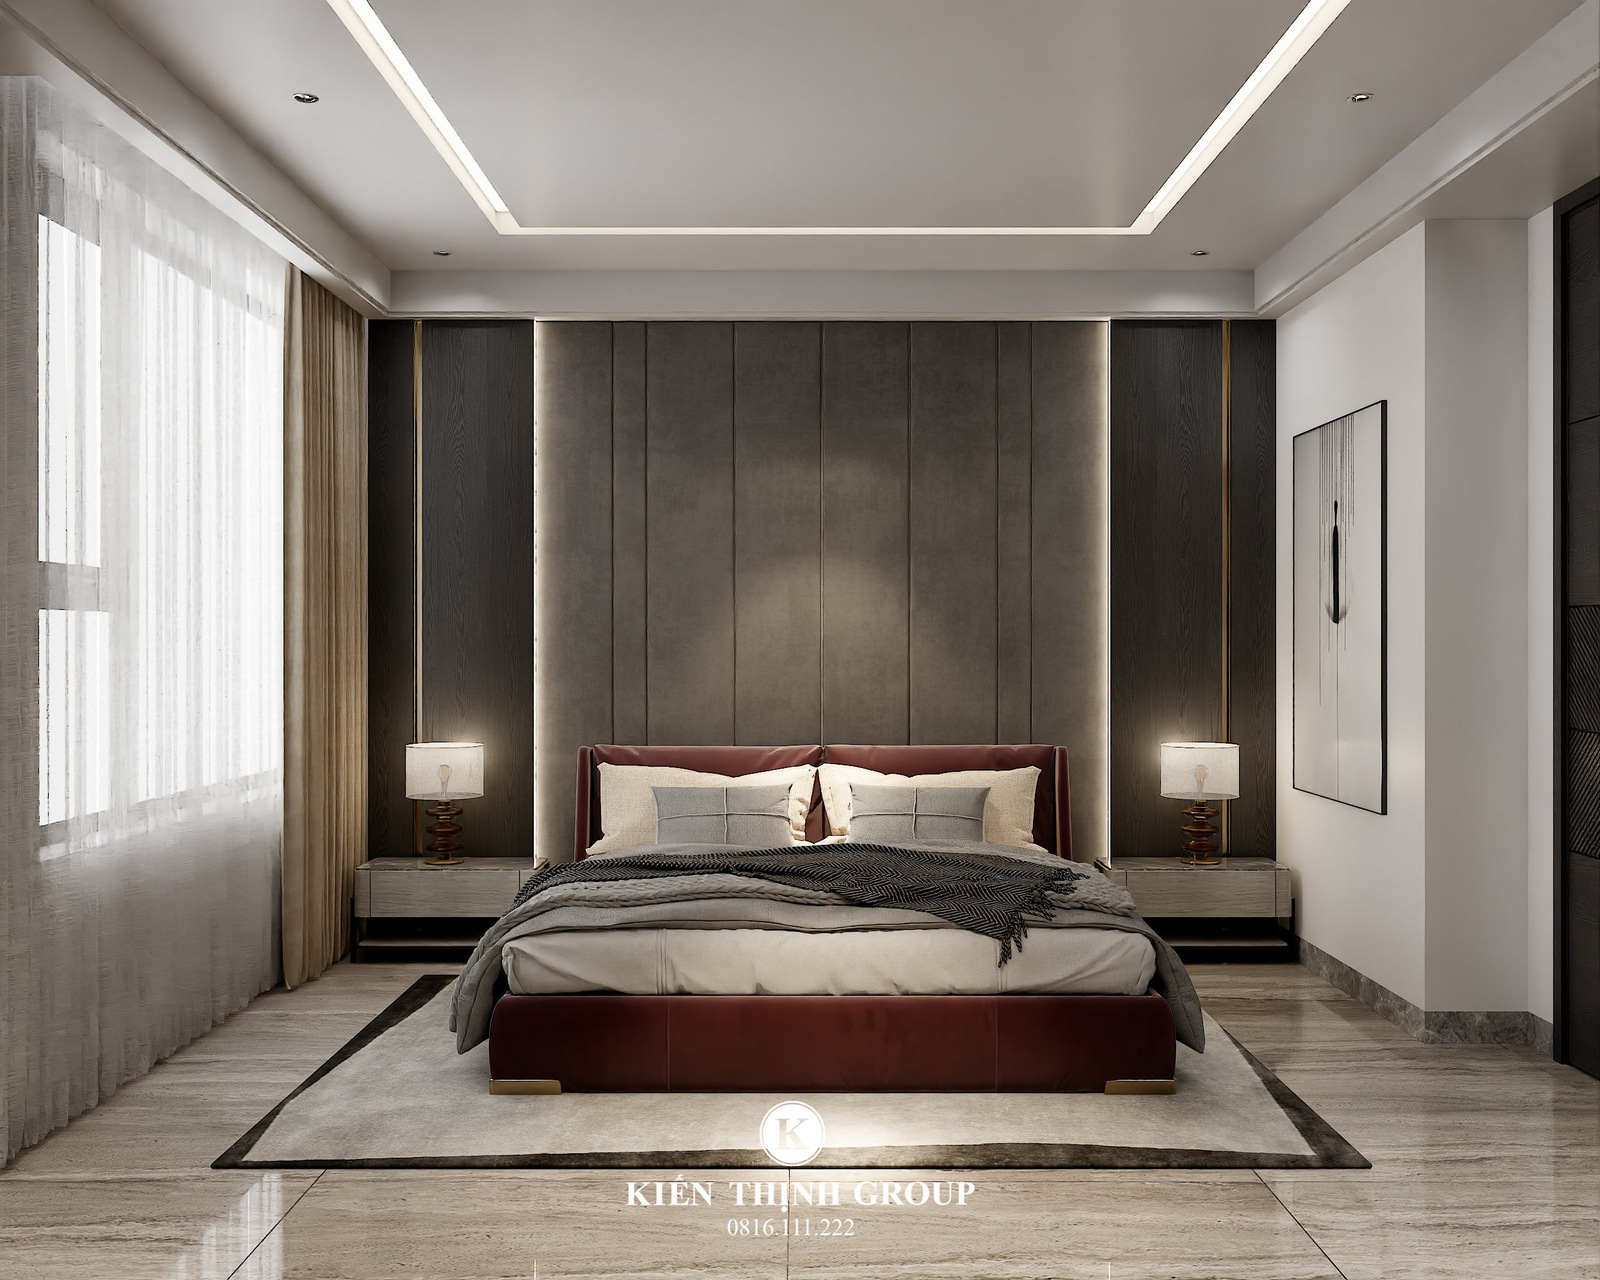 Nội thất phòng ngủ thiết kế theo phong cách hiện đại tối giản